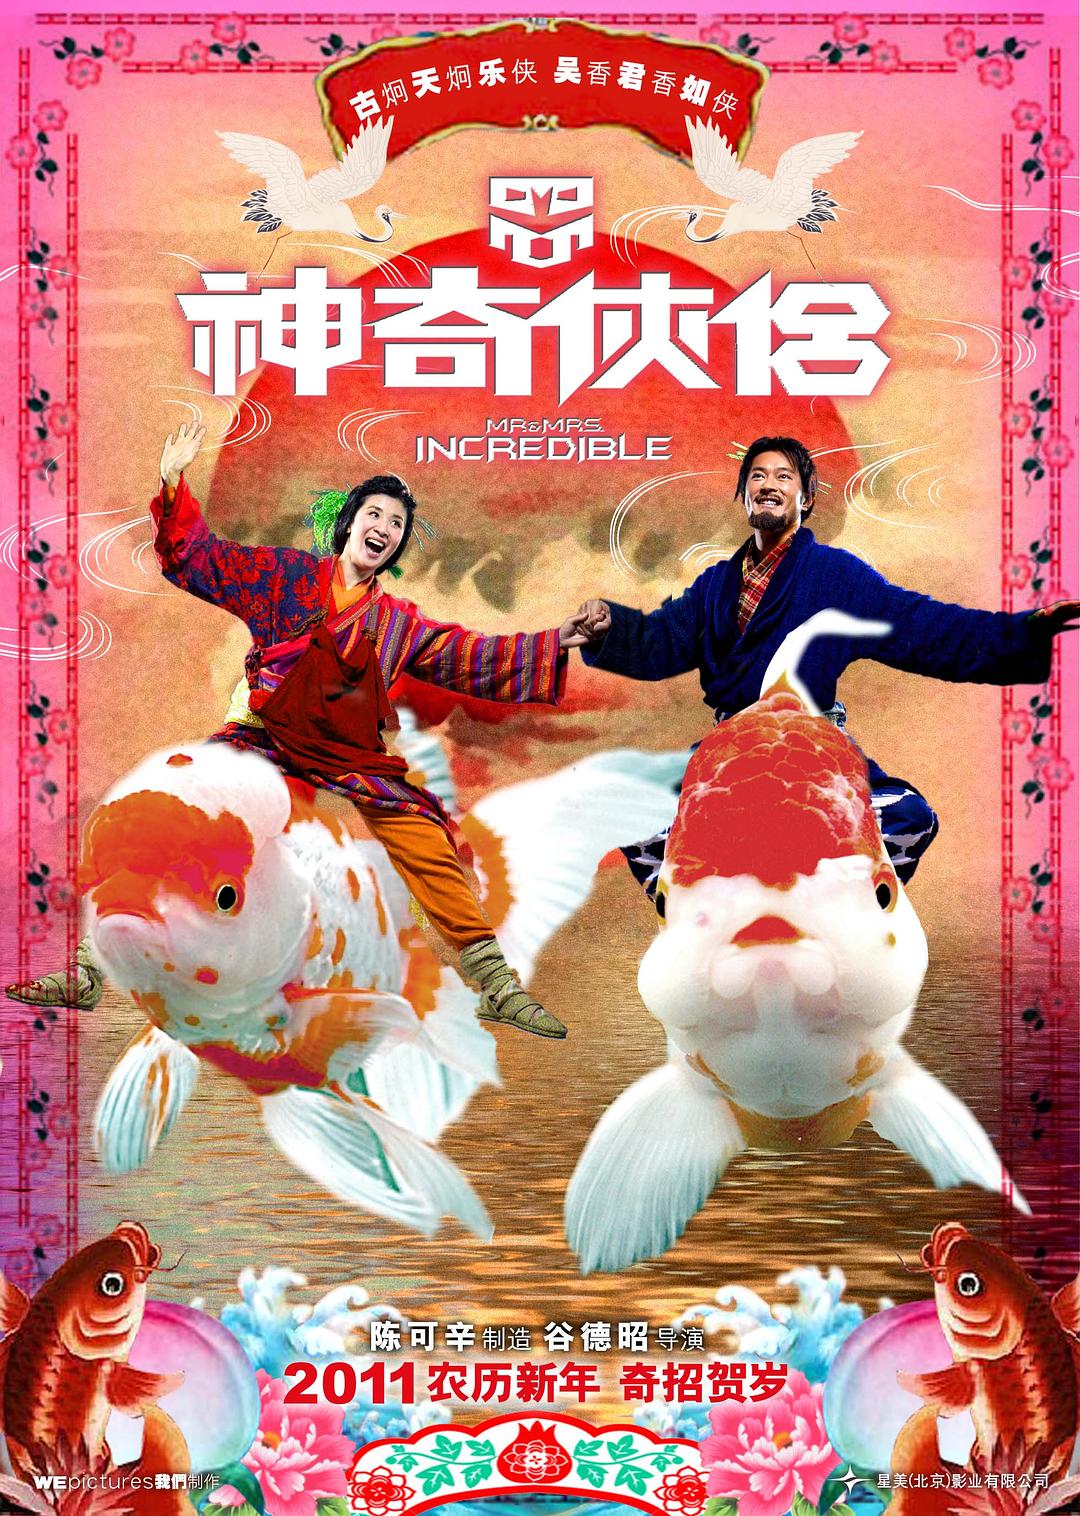 奇异侠侣 Mr.and.Mrs.Incredible.2011.CHINESE.1080p.BluRay.x264.DTS-FGT 9.12GB-1.png